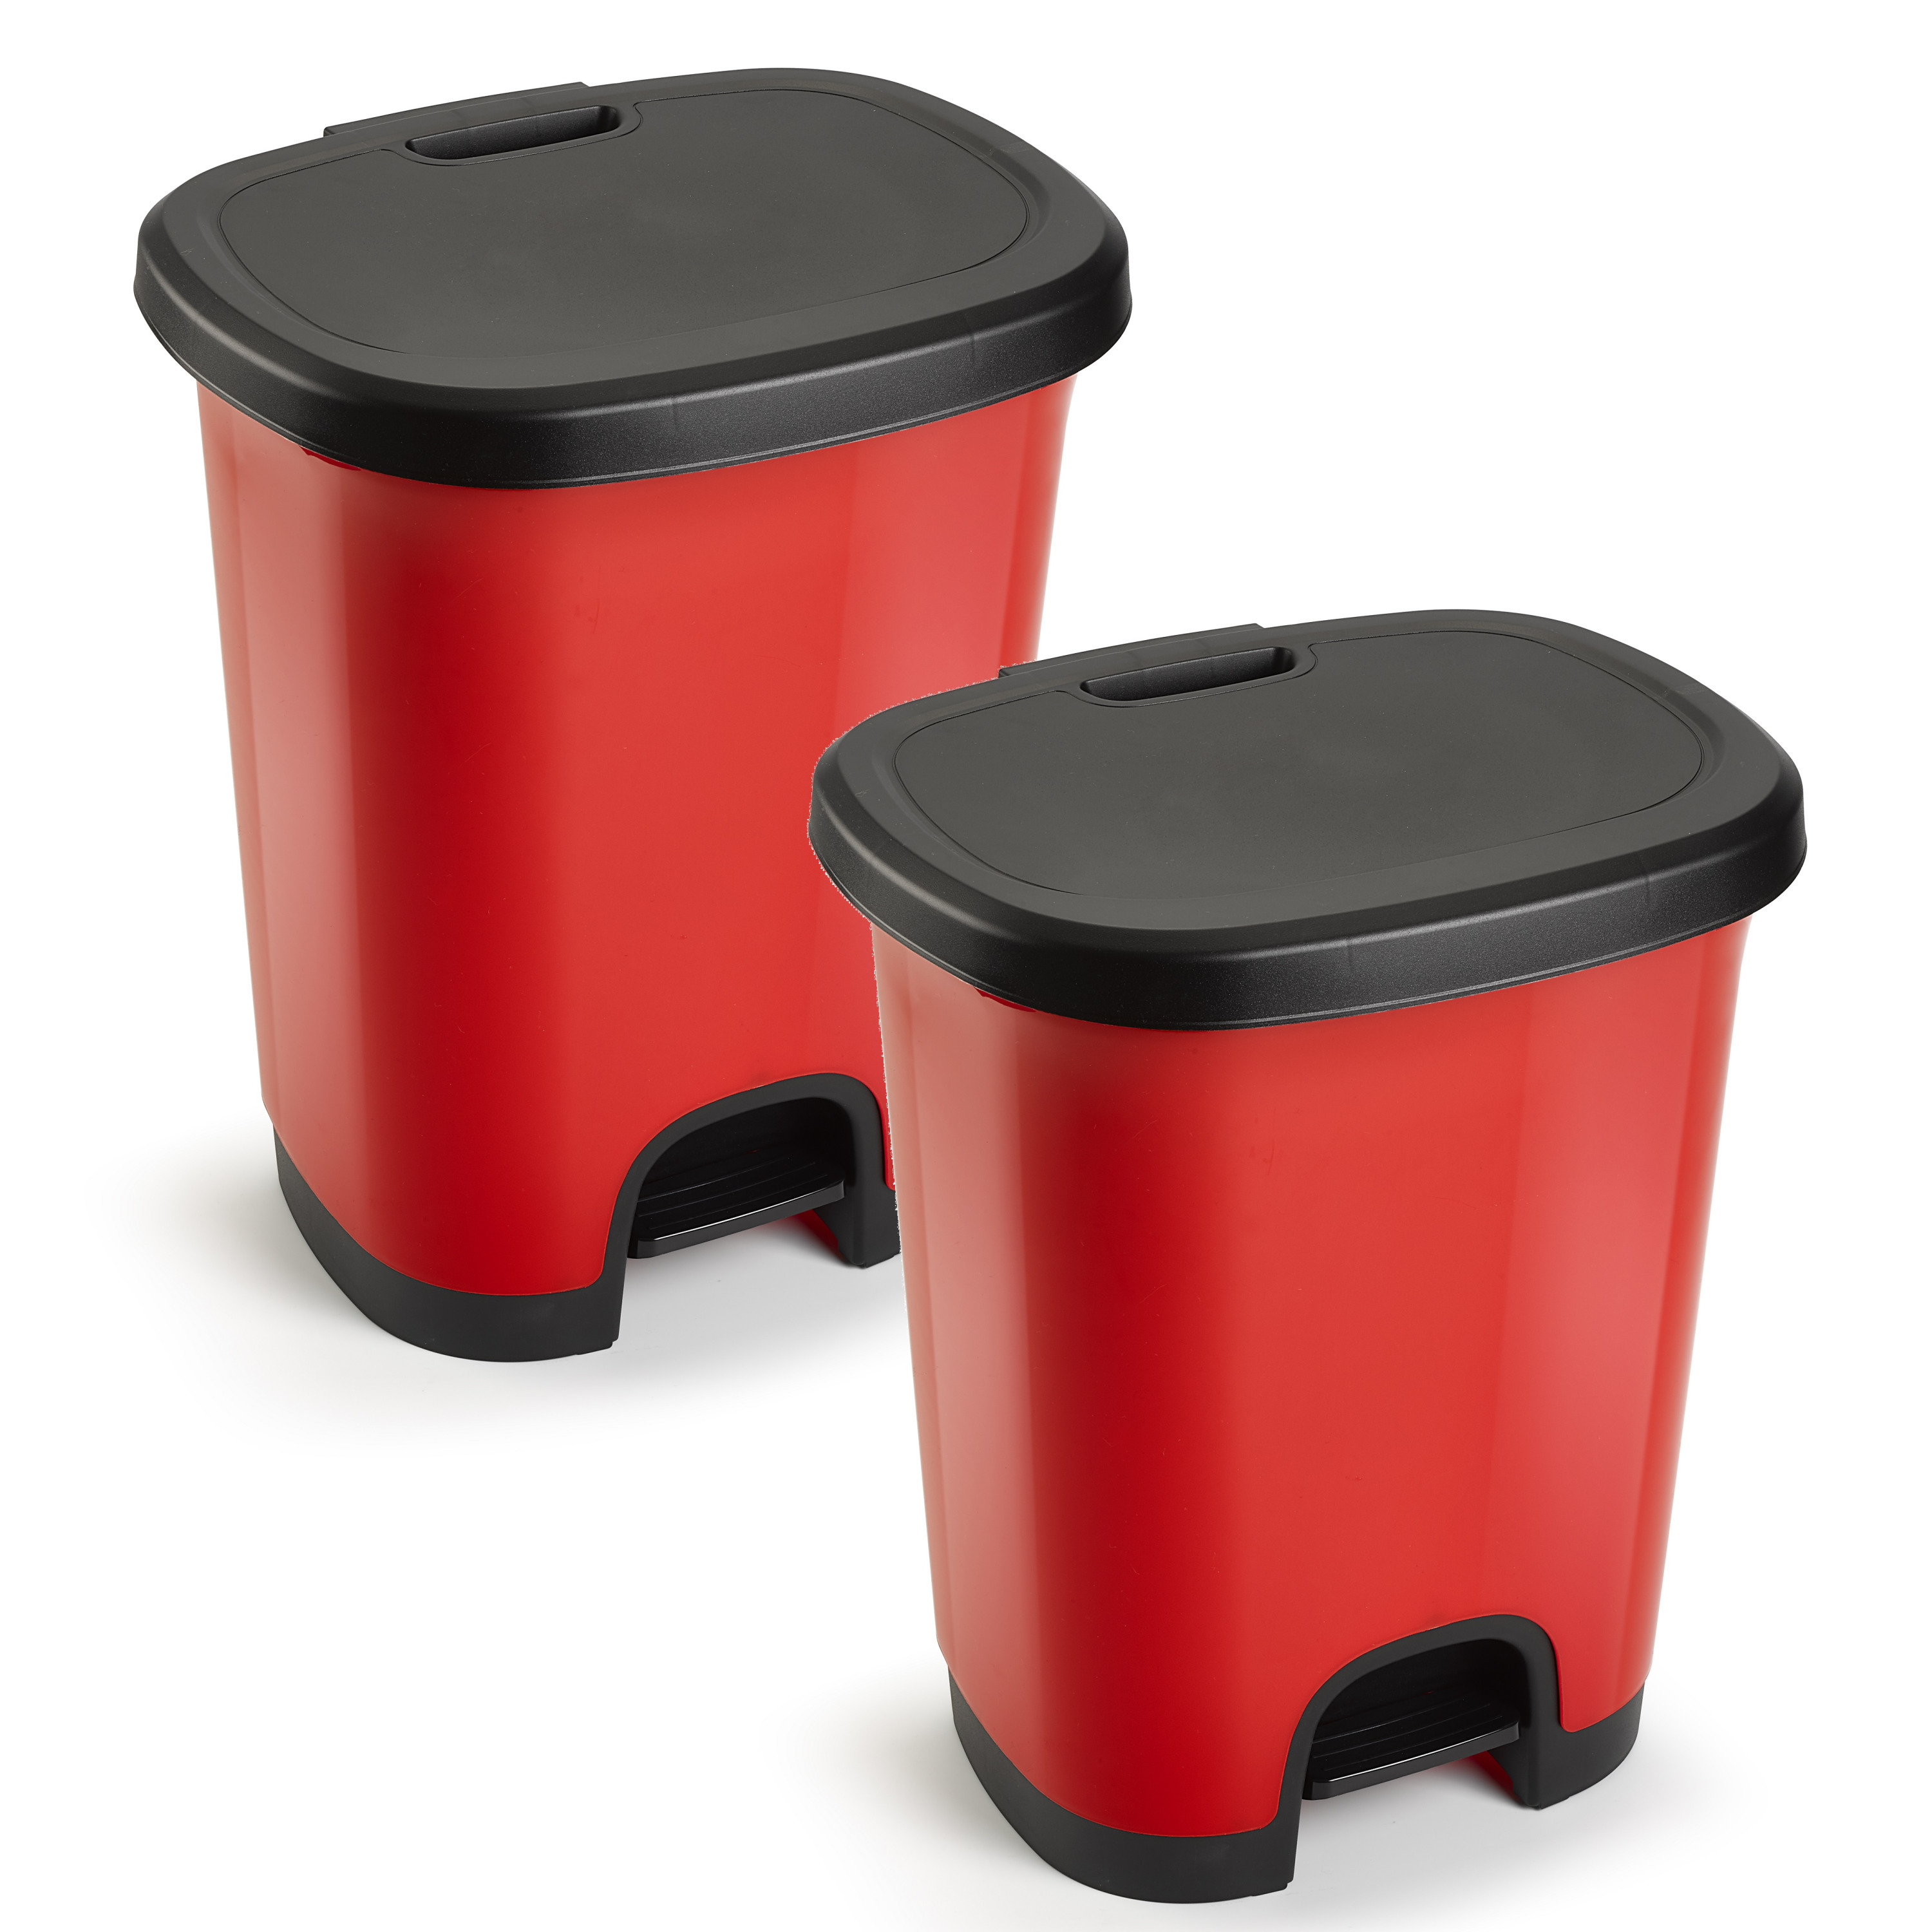 2x Stuks afvalemmer-vuilnisemmer-pedaalemmer 18 liter in het rood-zwart met deksel en pedaal